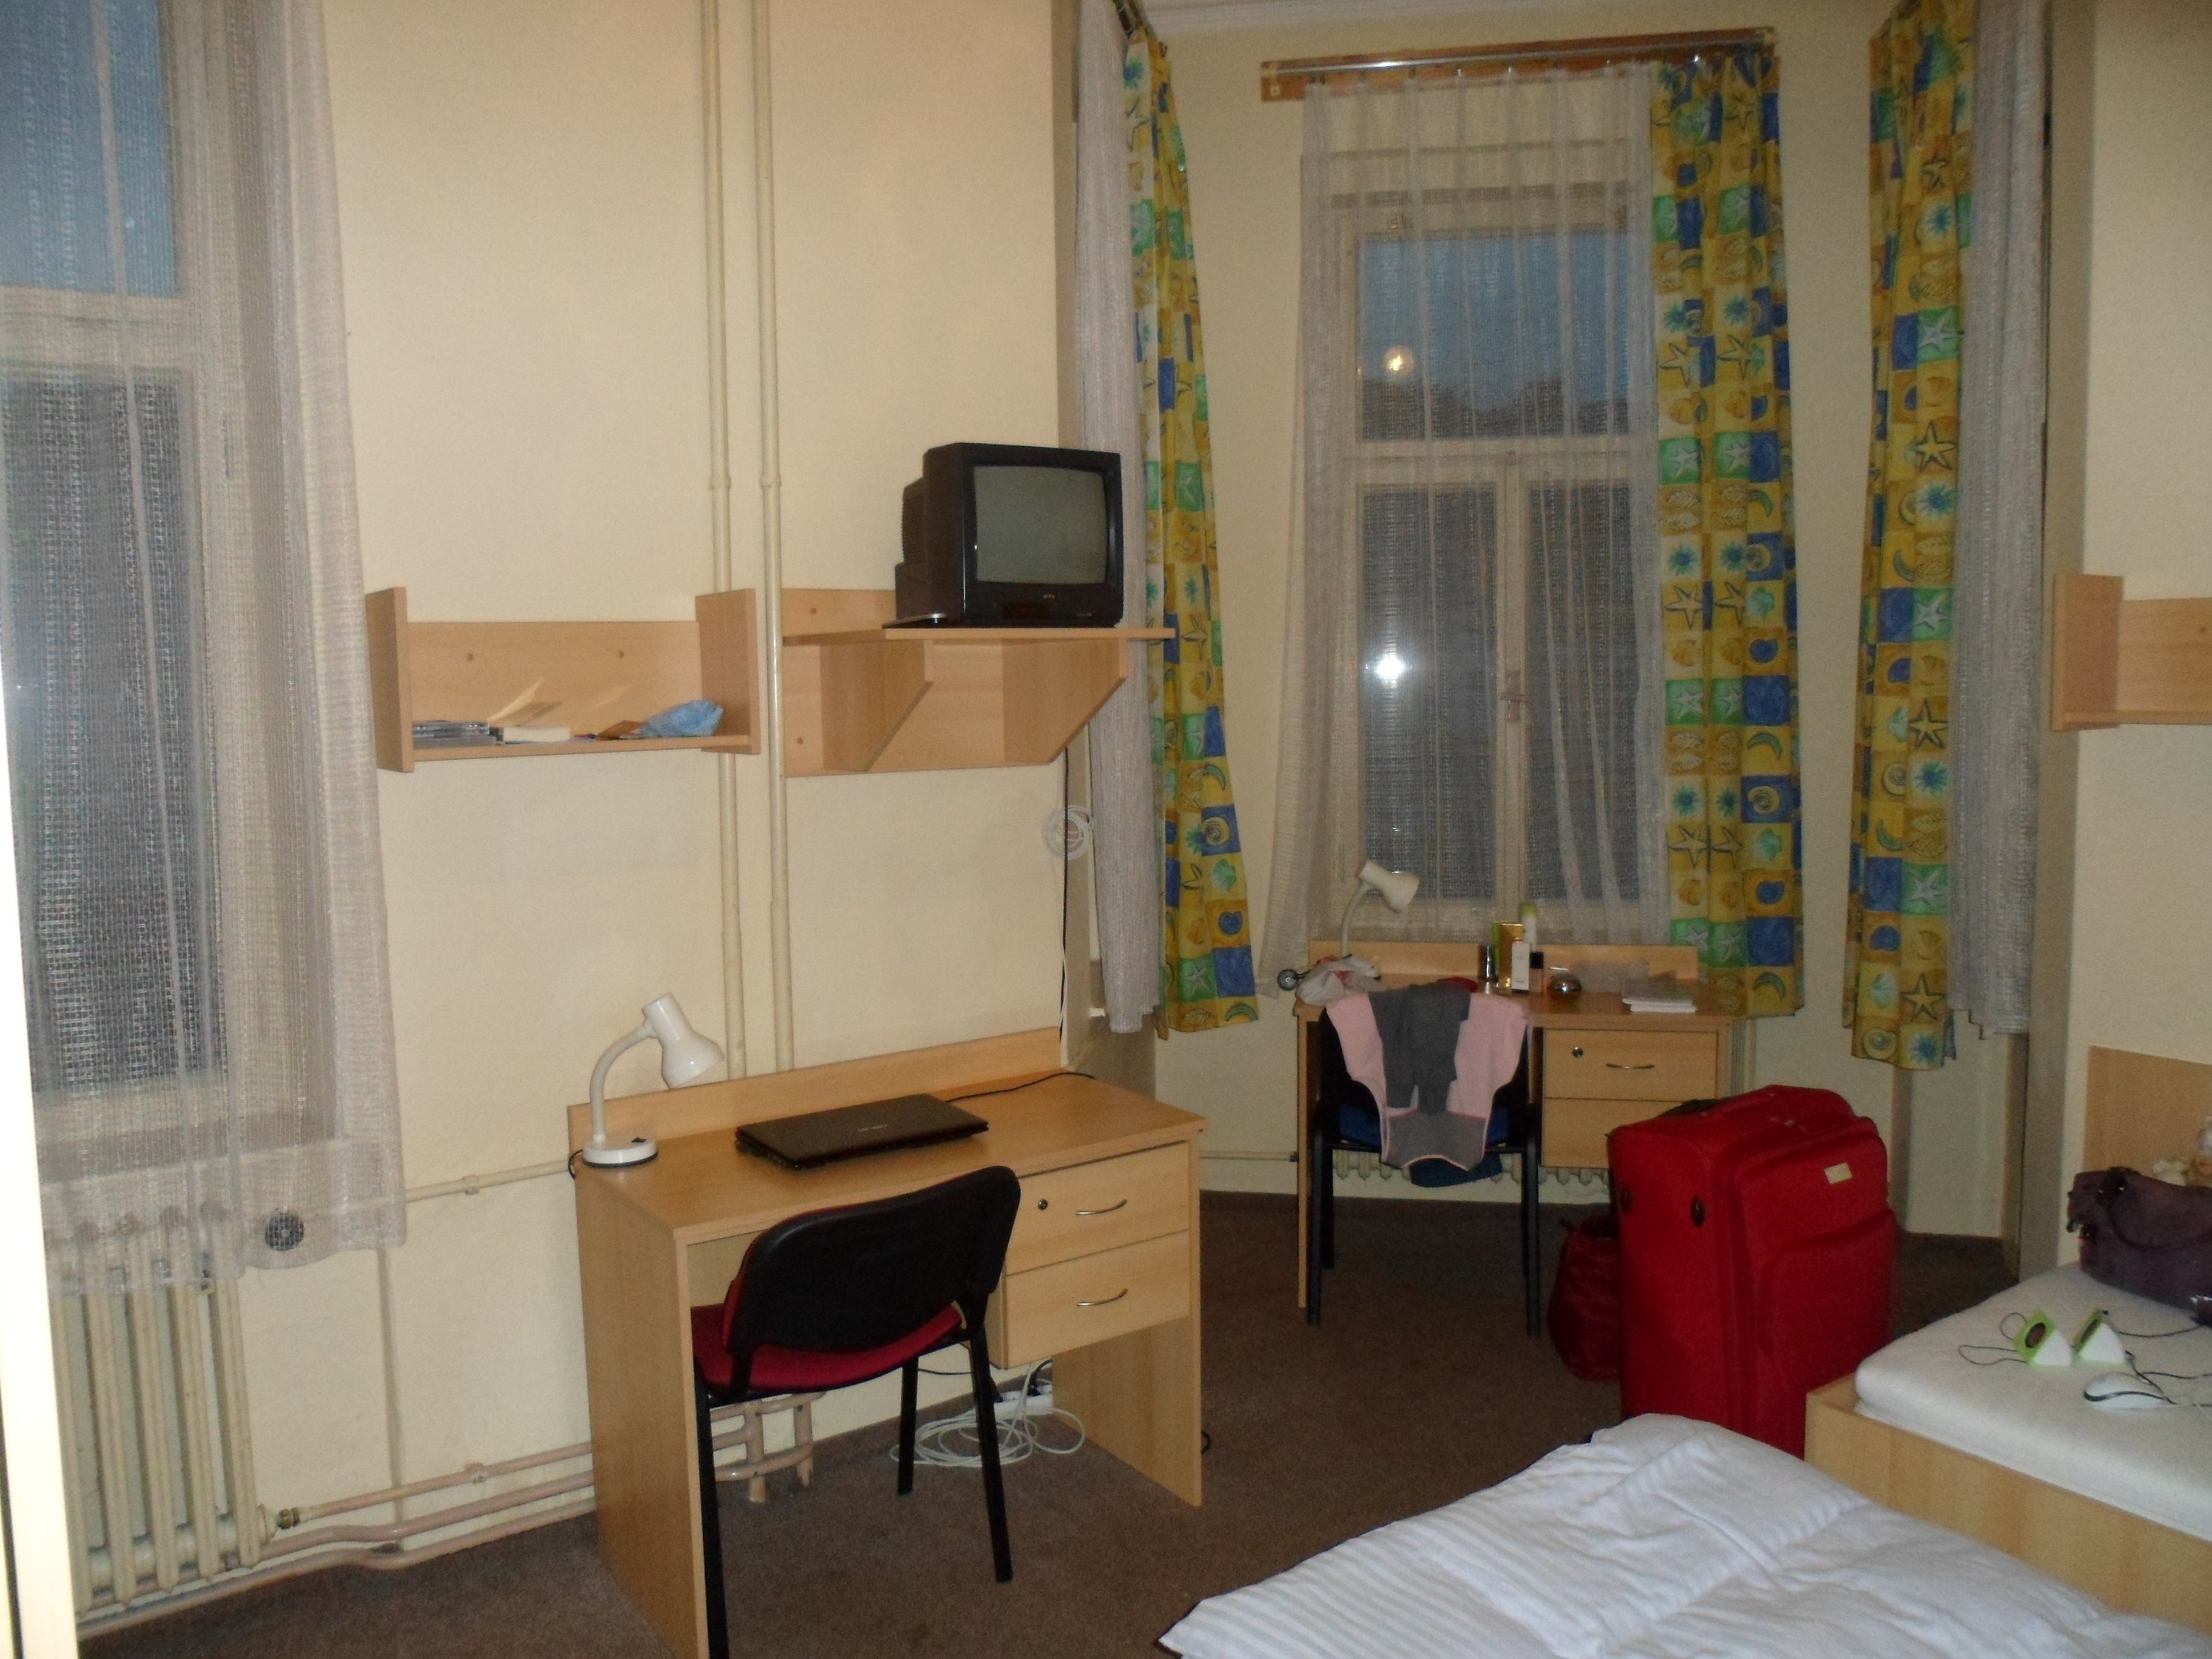 Комнаты в общежитии ульяновск. Комната в общежитии. Планировка комнаты в общежитии. Уютная комната в общежитии. Фото комнаты в общежитии.